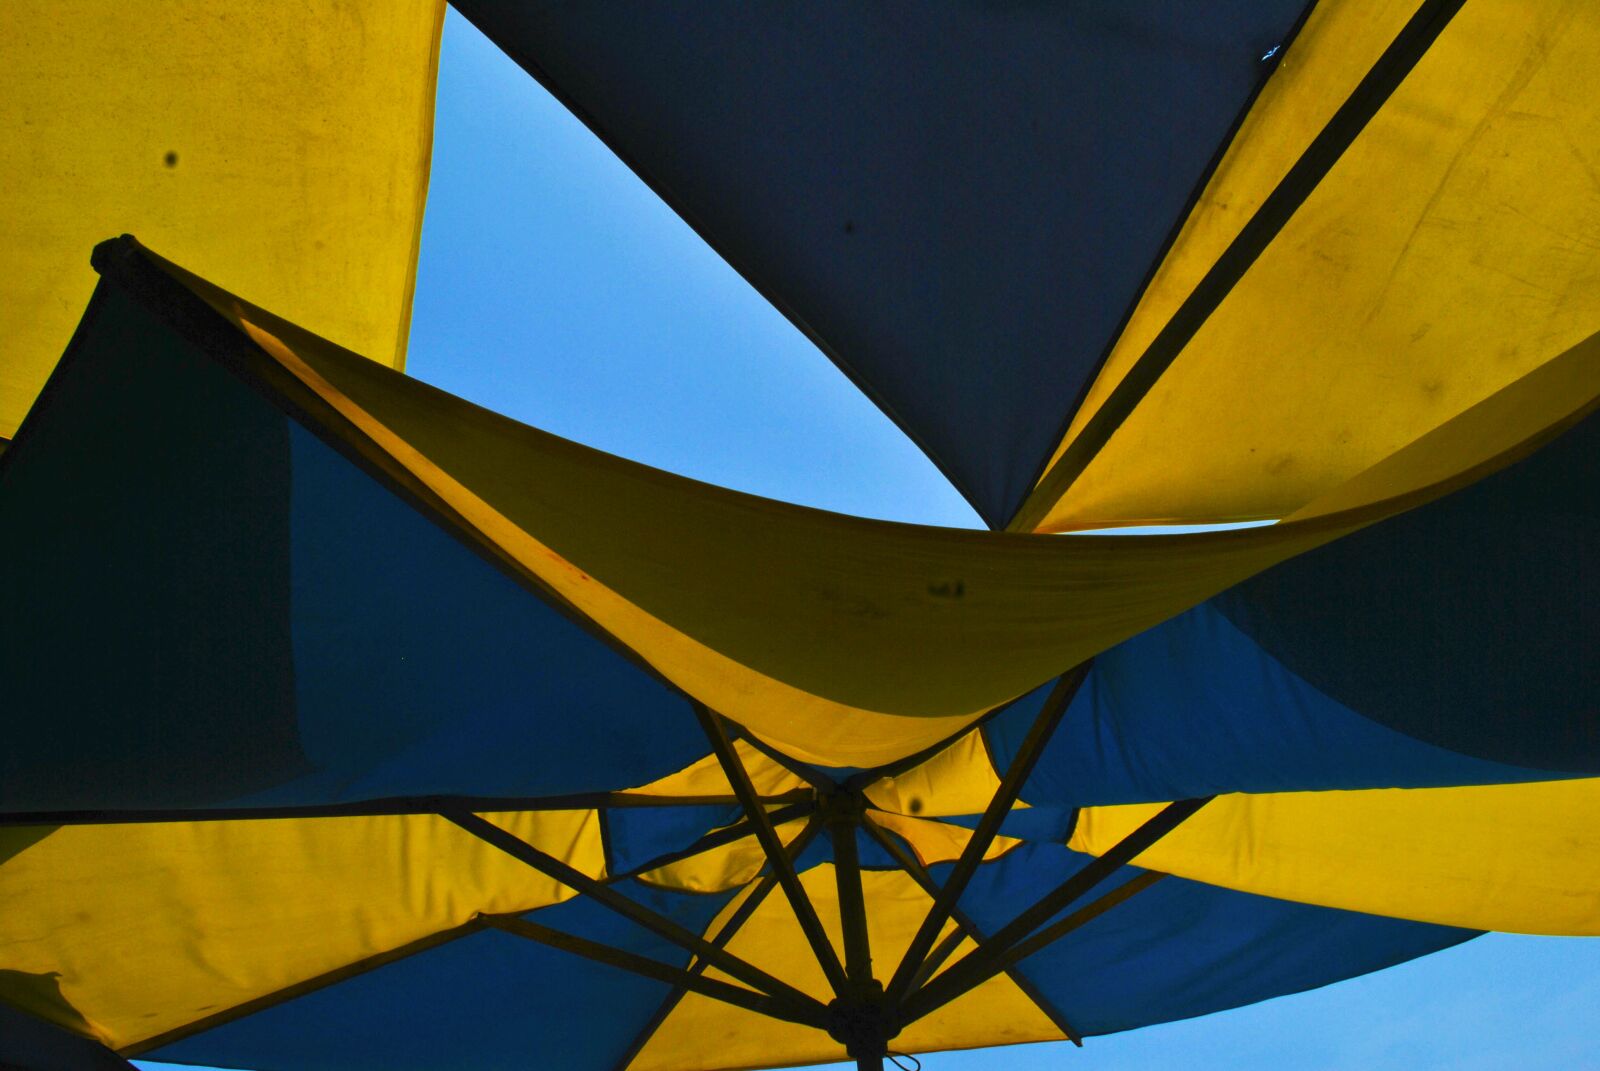 Nikon D3000 sample photo. Umbrellas, beach, summer photography